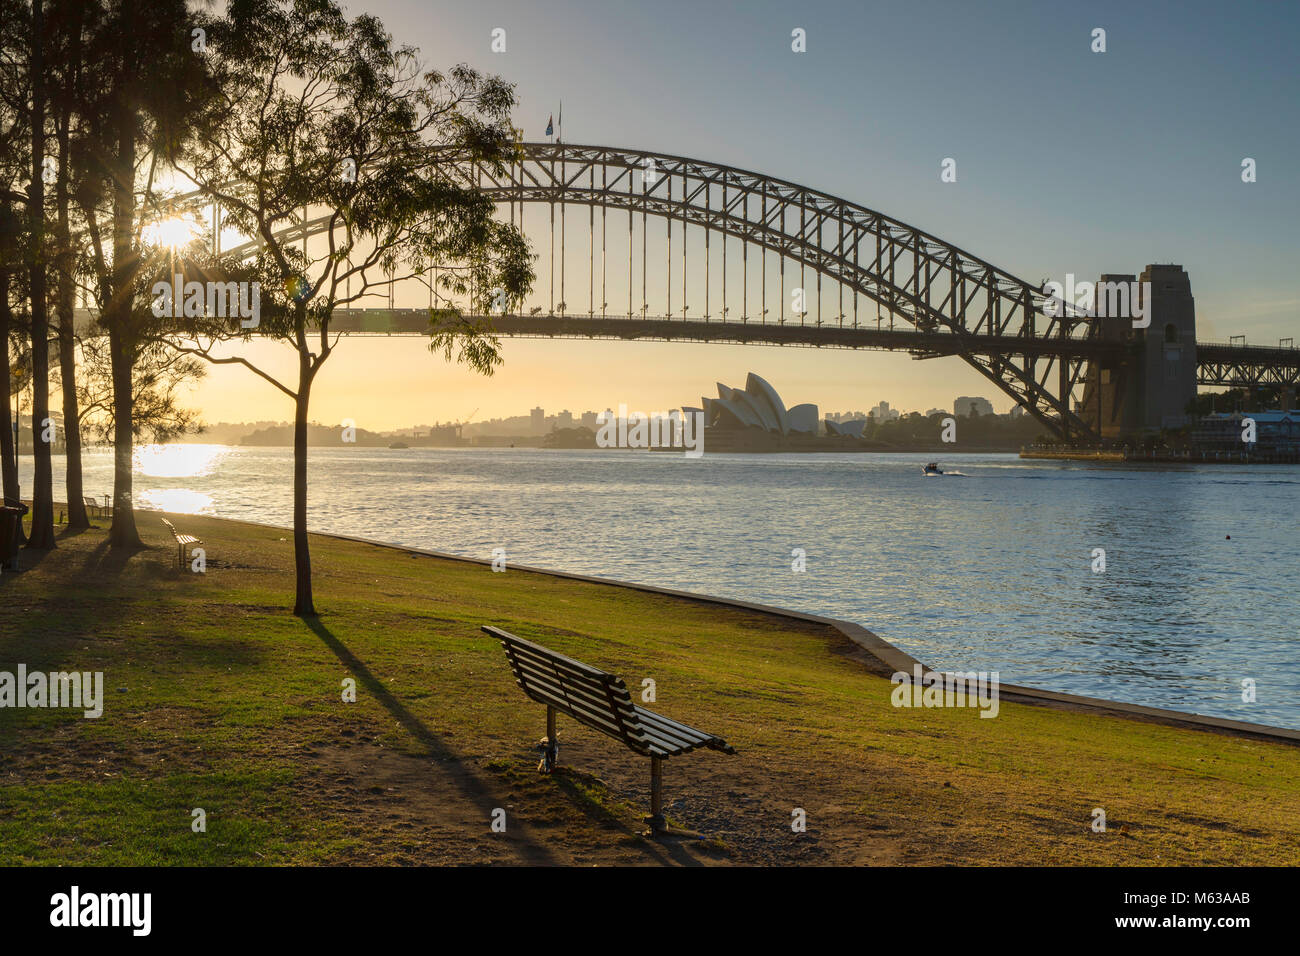 Sydney Harbour Bridge and Sydney Opera House at sunrise, Sydney, New South Wales, Australia Stock Photo